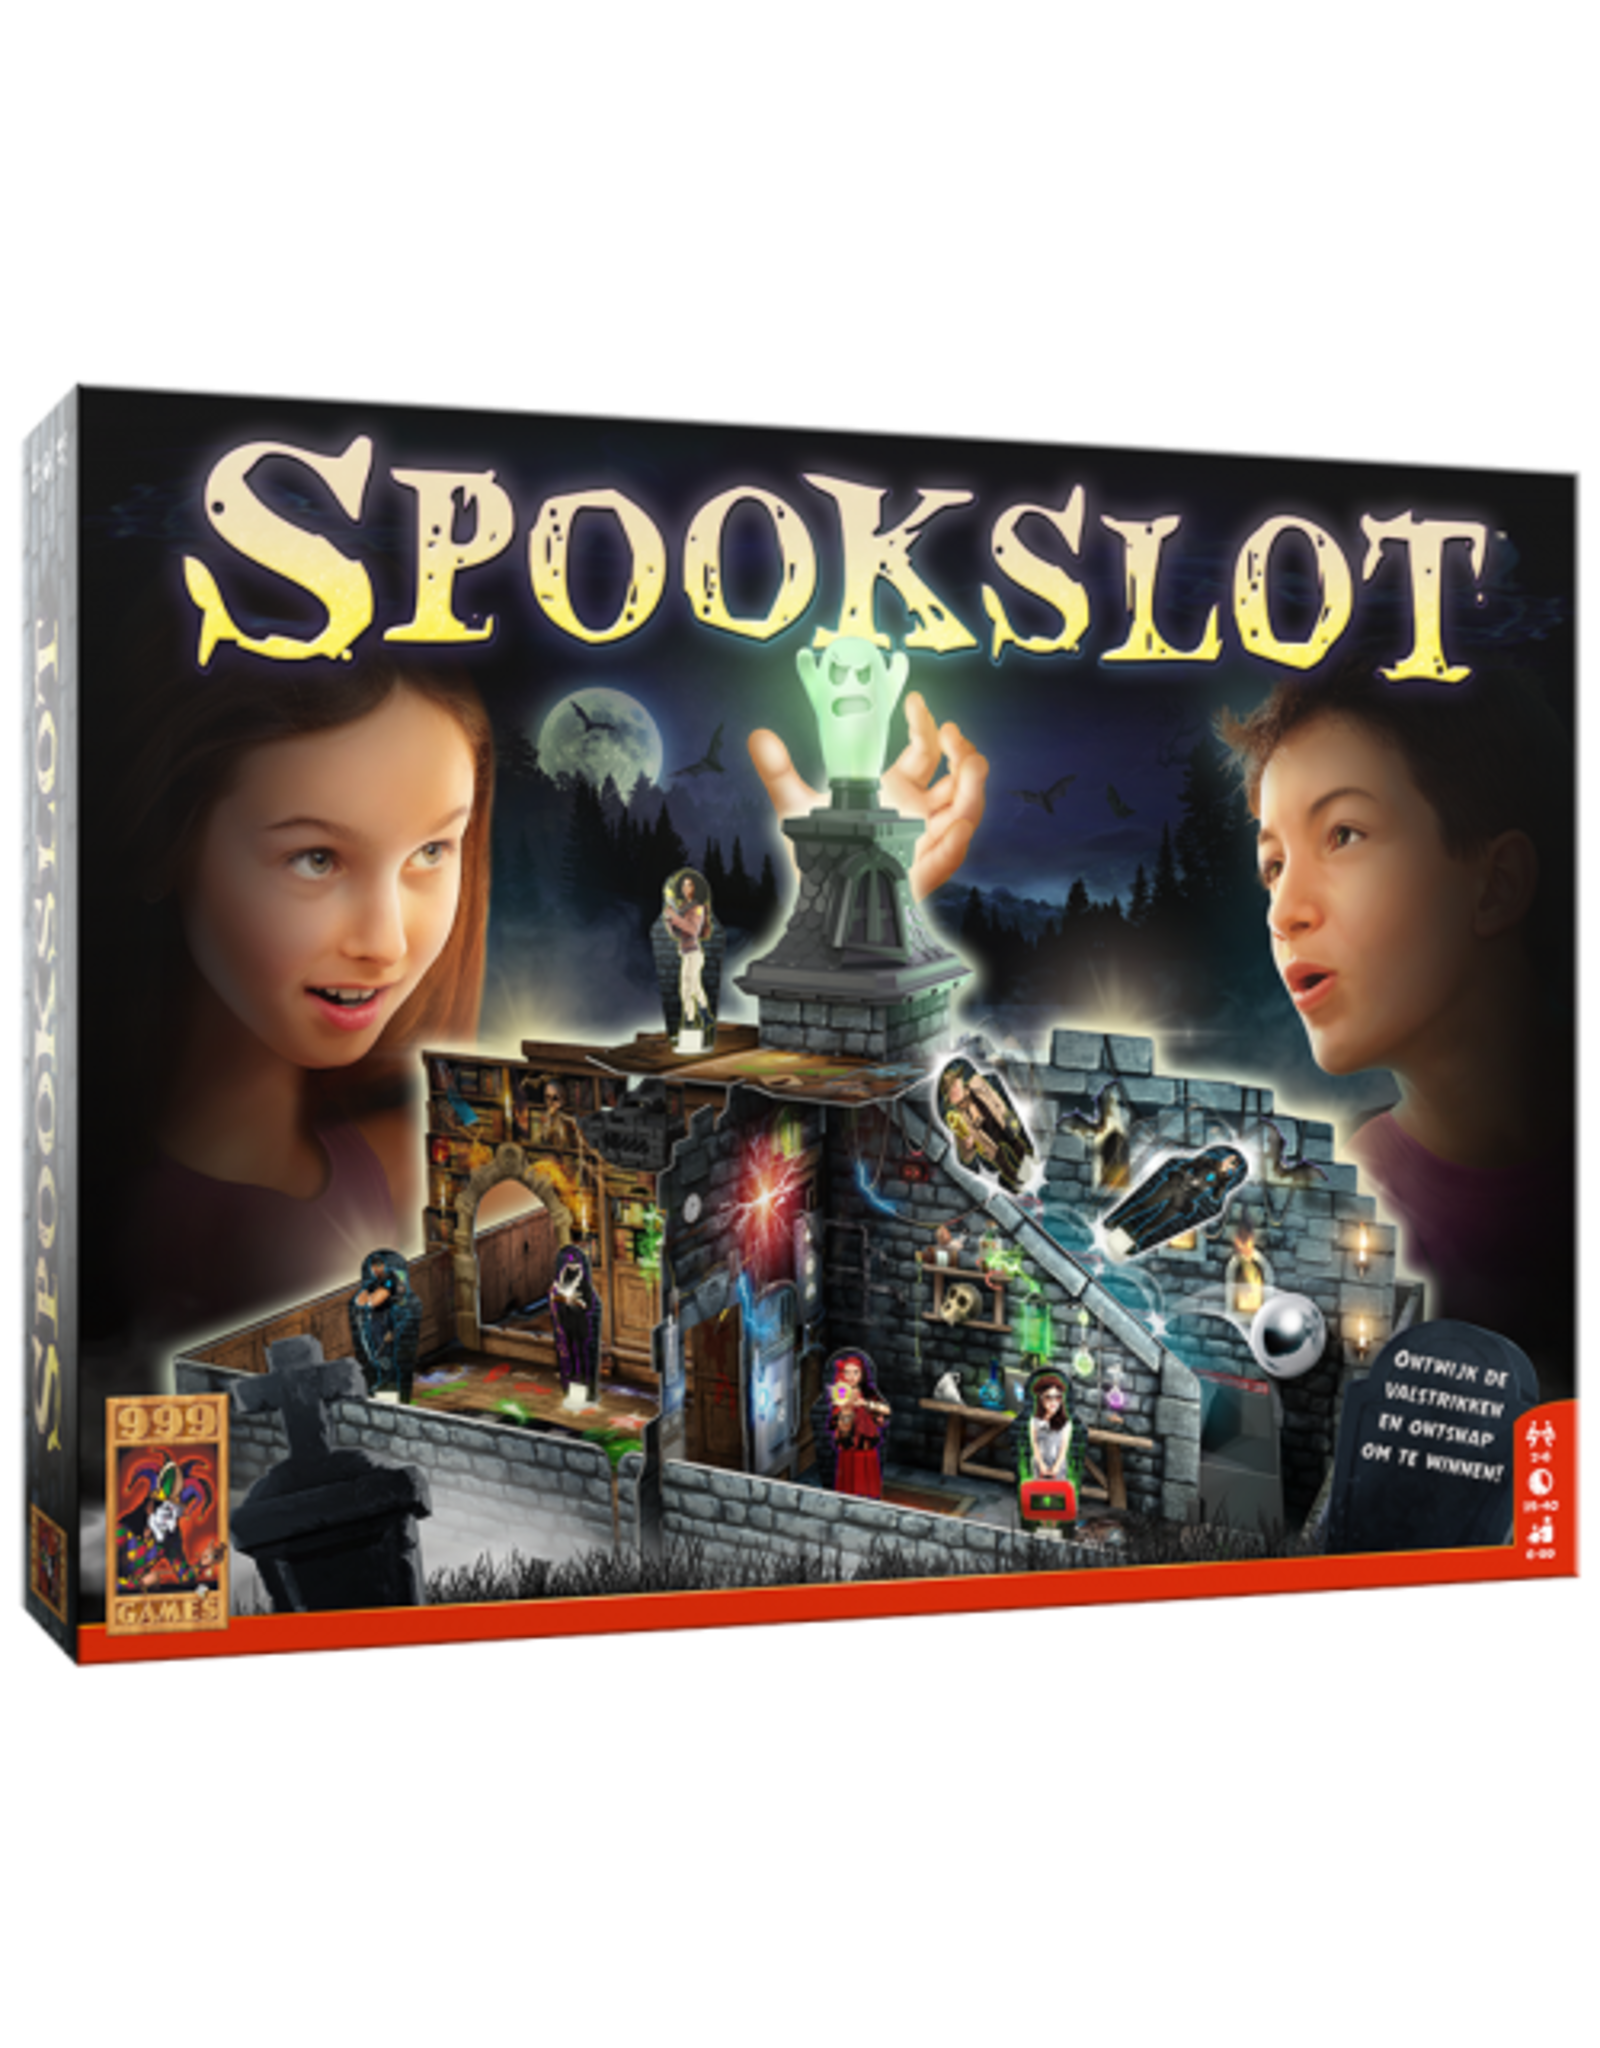 999 GAMES Spookslot - Bordspel